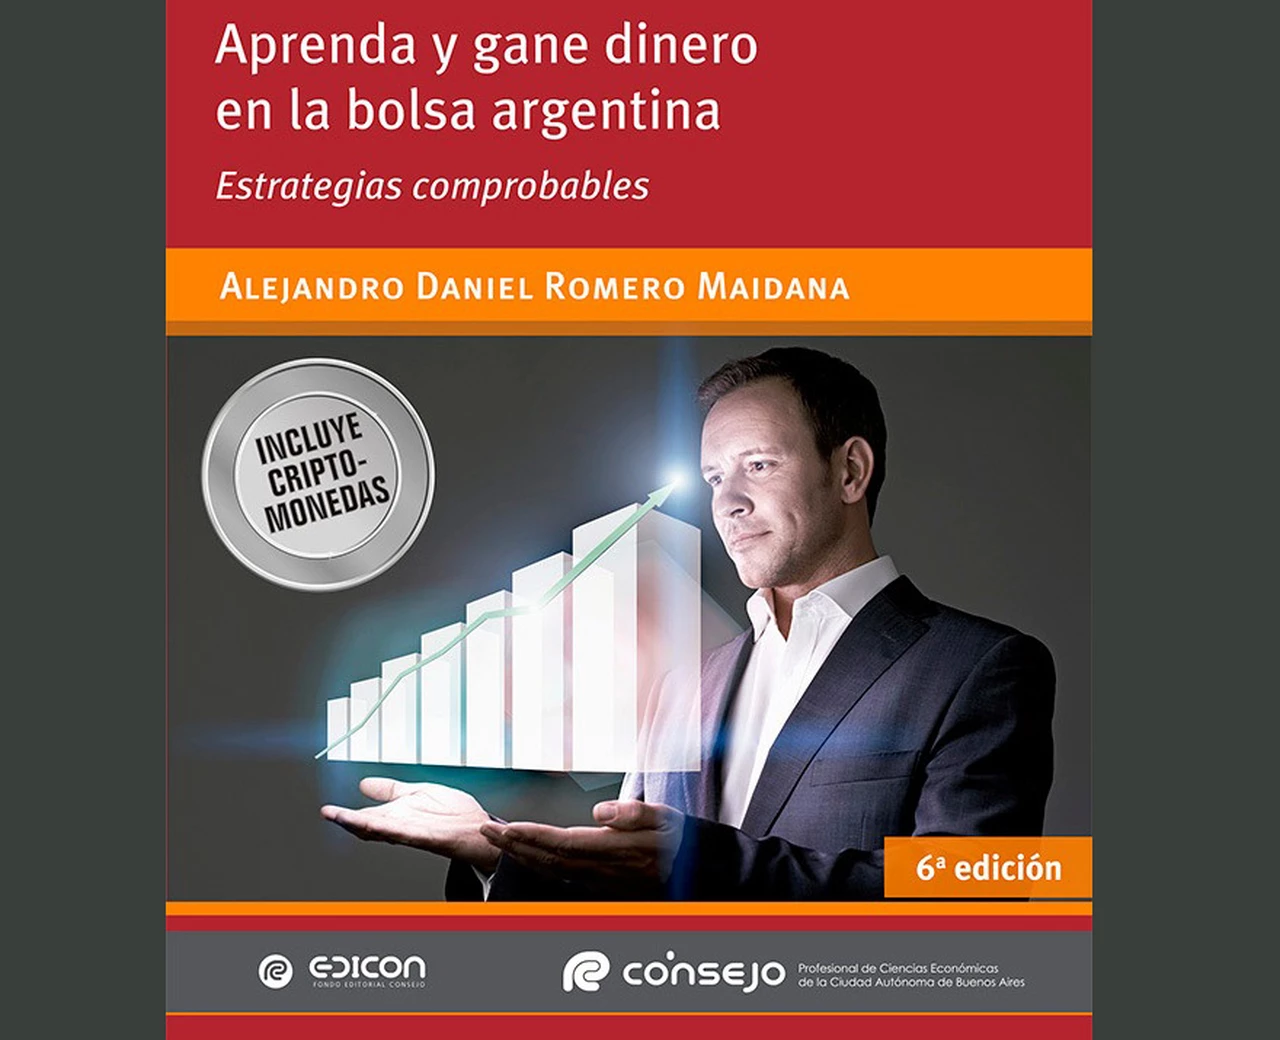 "Aprenda y gane dinero en la bolsa argentina": nuevo material del Consejo Profesional de Ciencias Económicas porteño